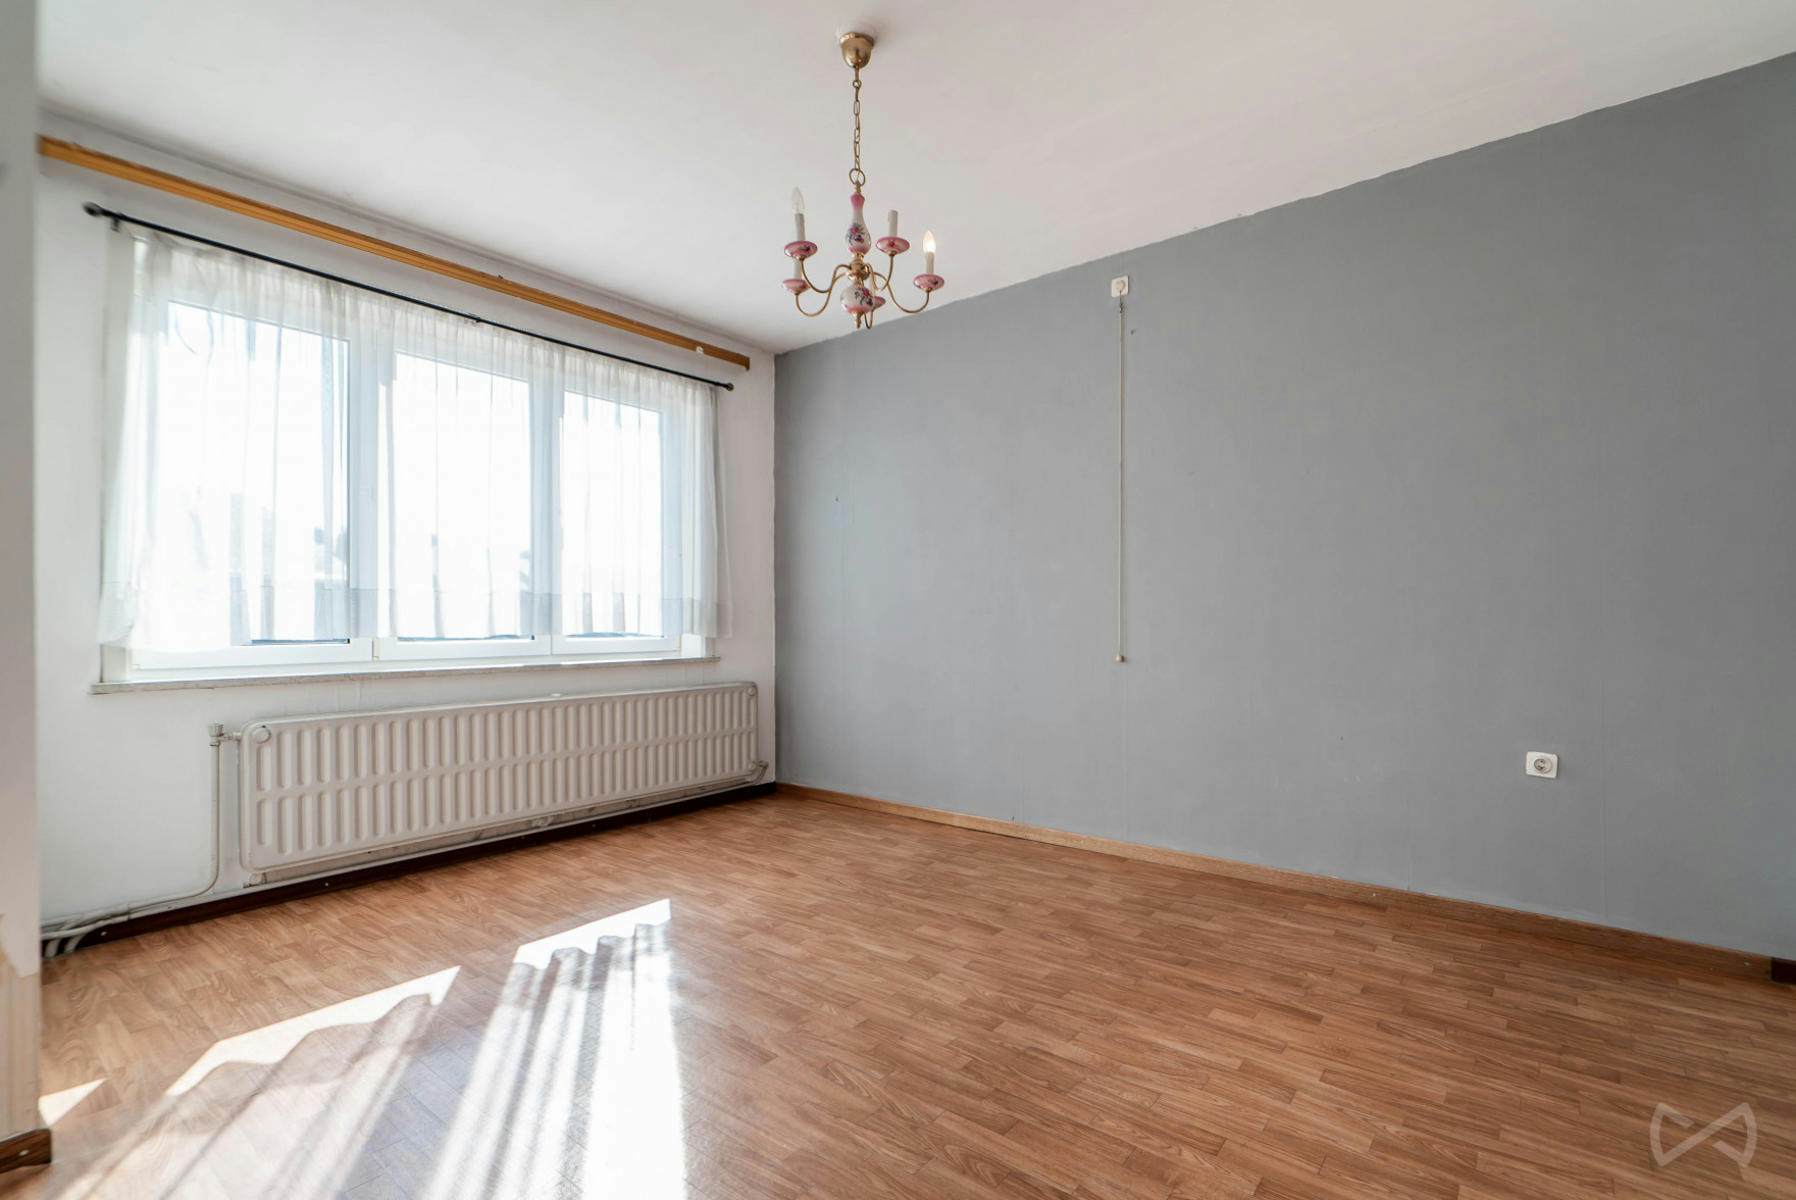 Foto 1 van 4 van Bel-etage met drie slaapkamers in Enghien